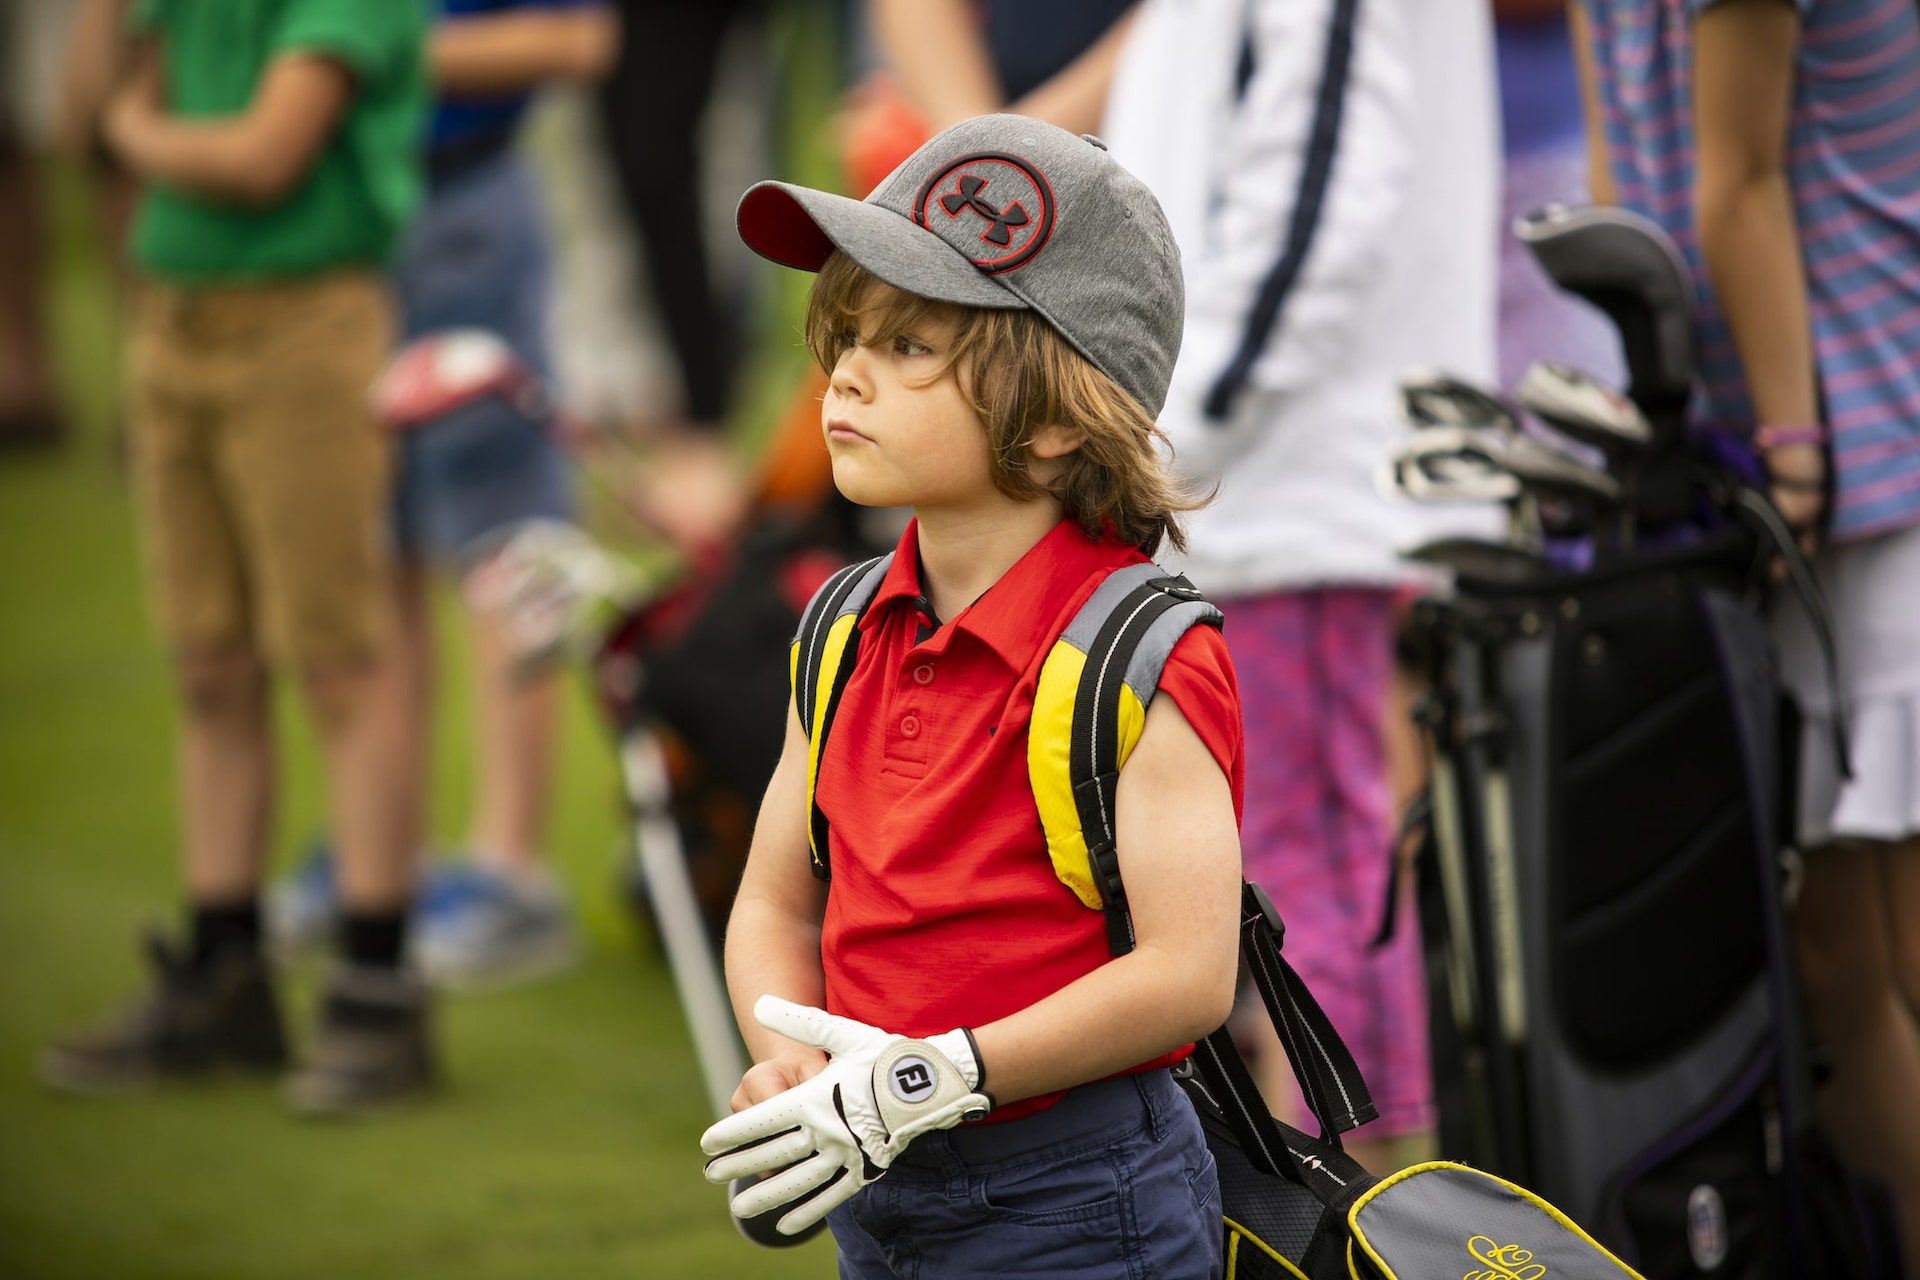 May_Teaching_Kids_Golf